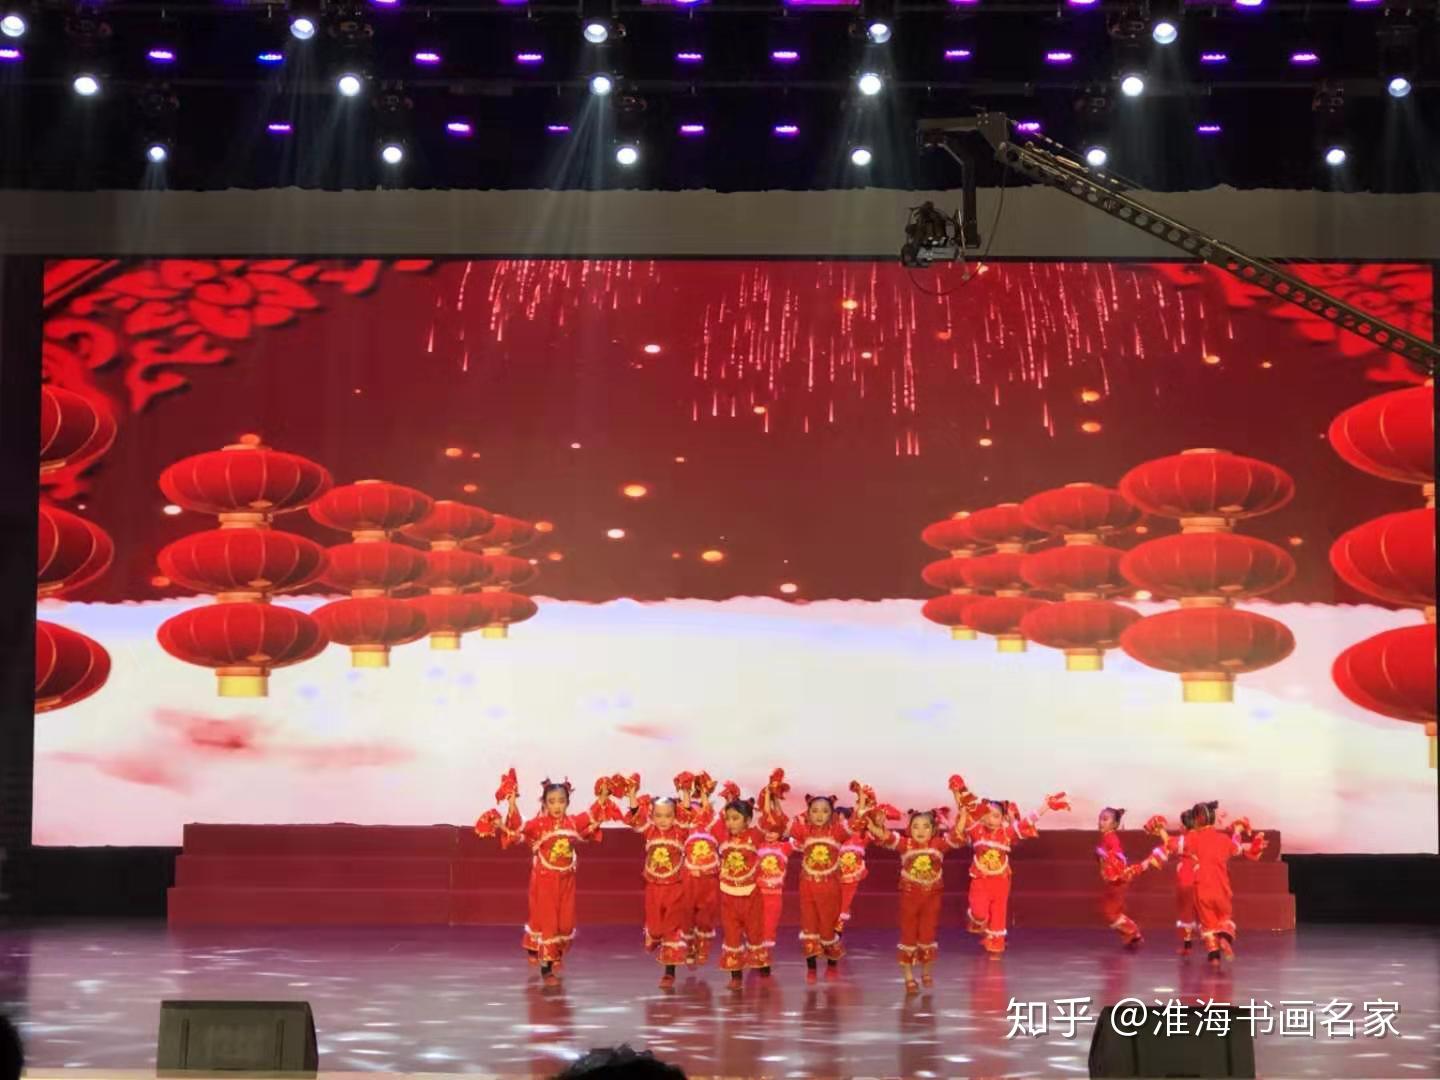 2020安徽广播电视台《超级童星》春节联欢晚会暨第十五届青春中国